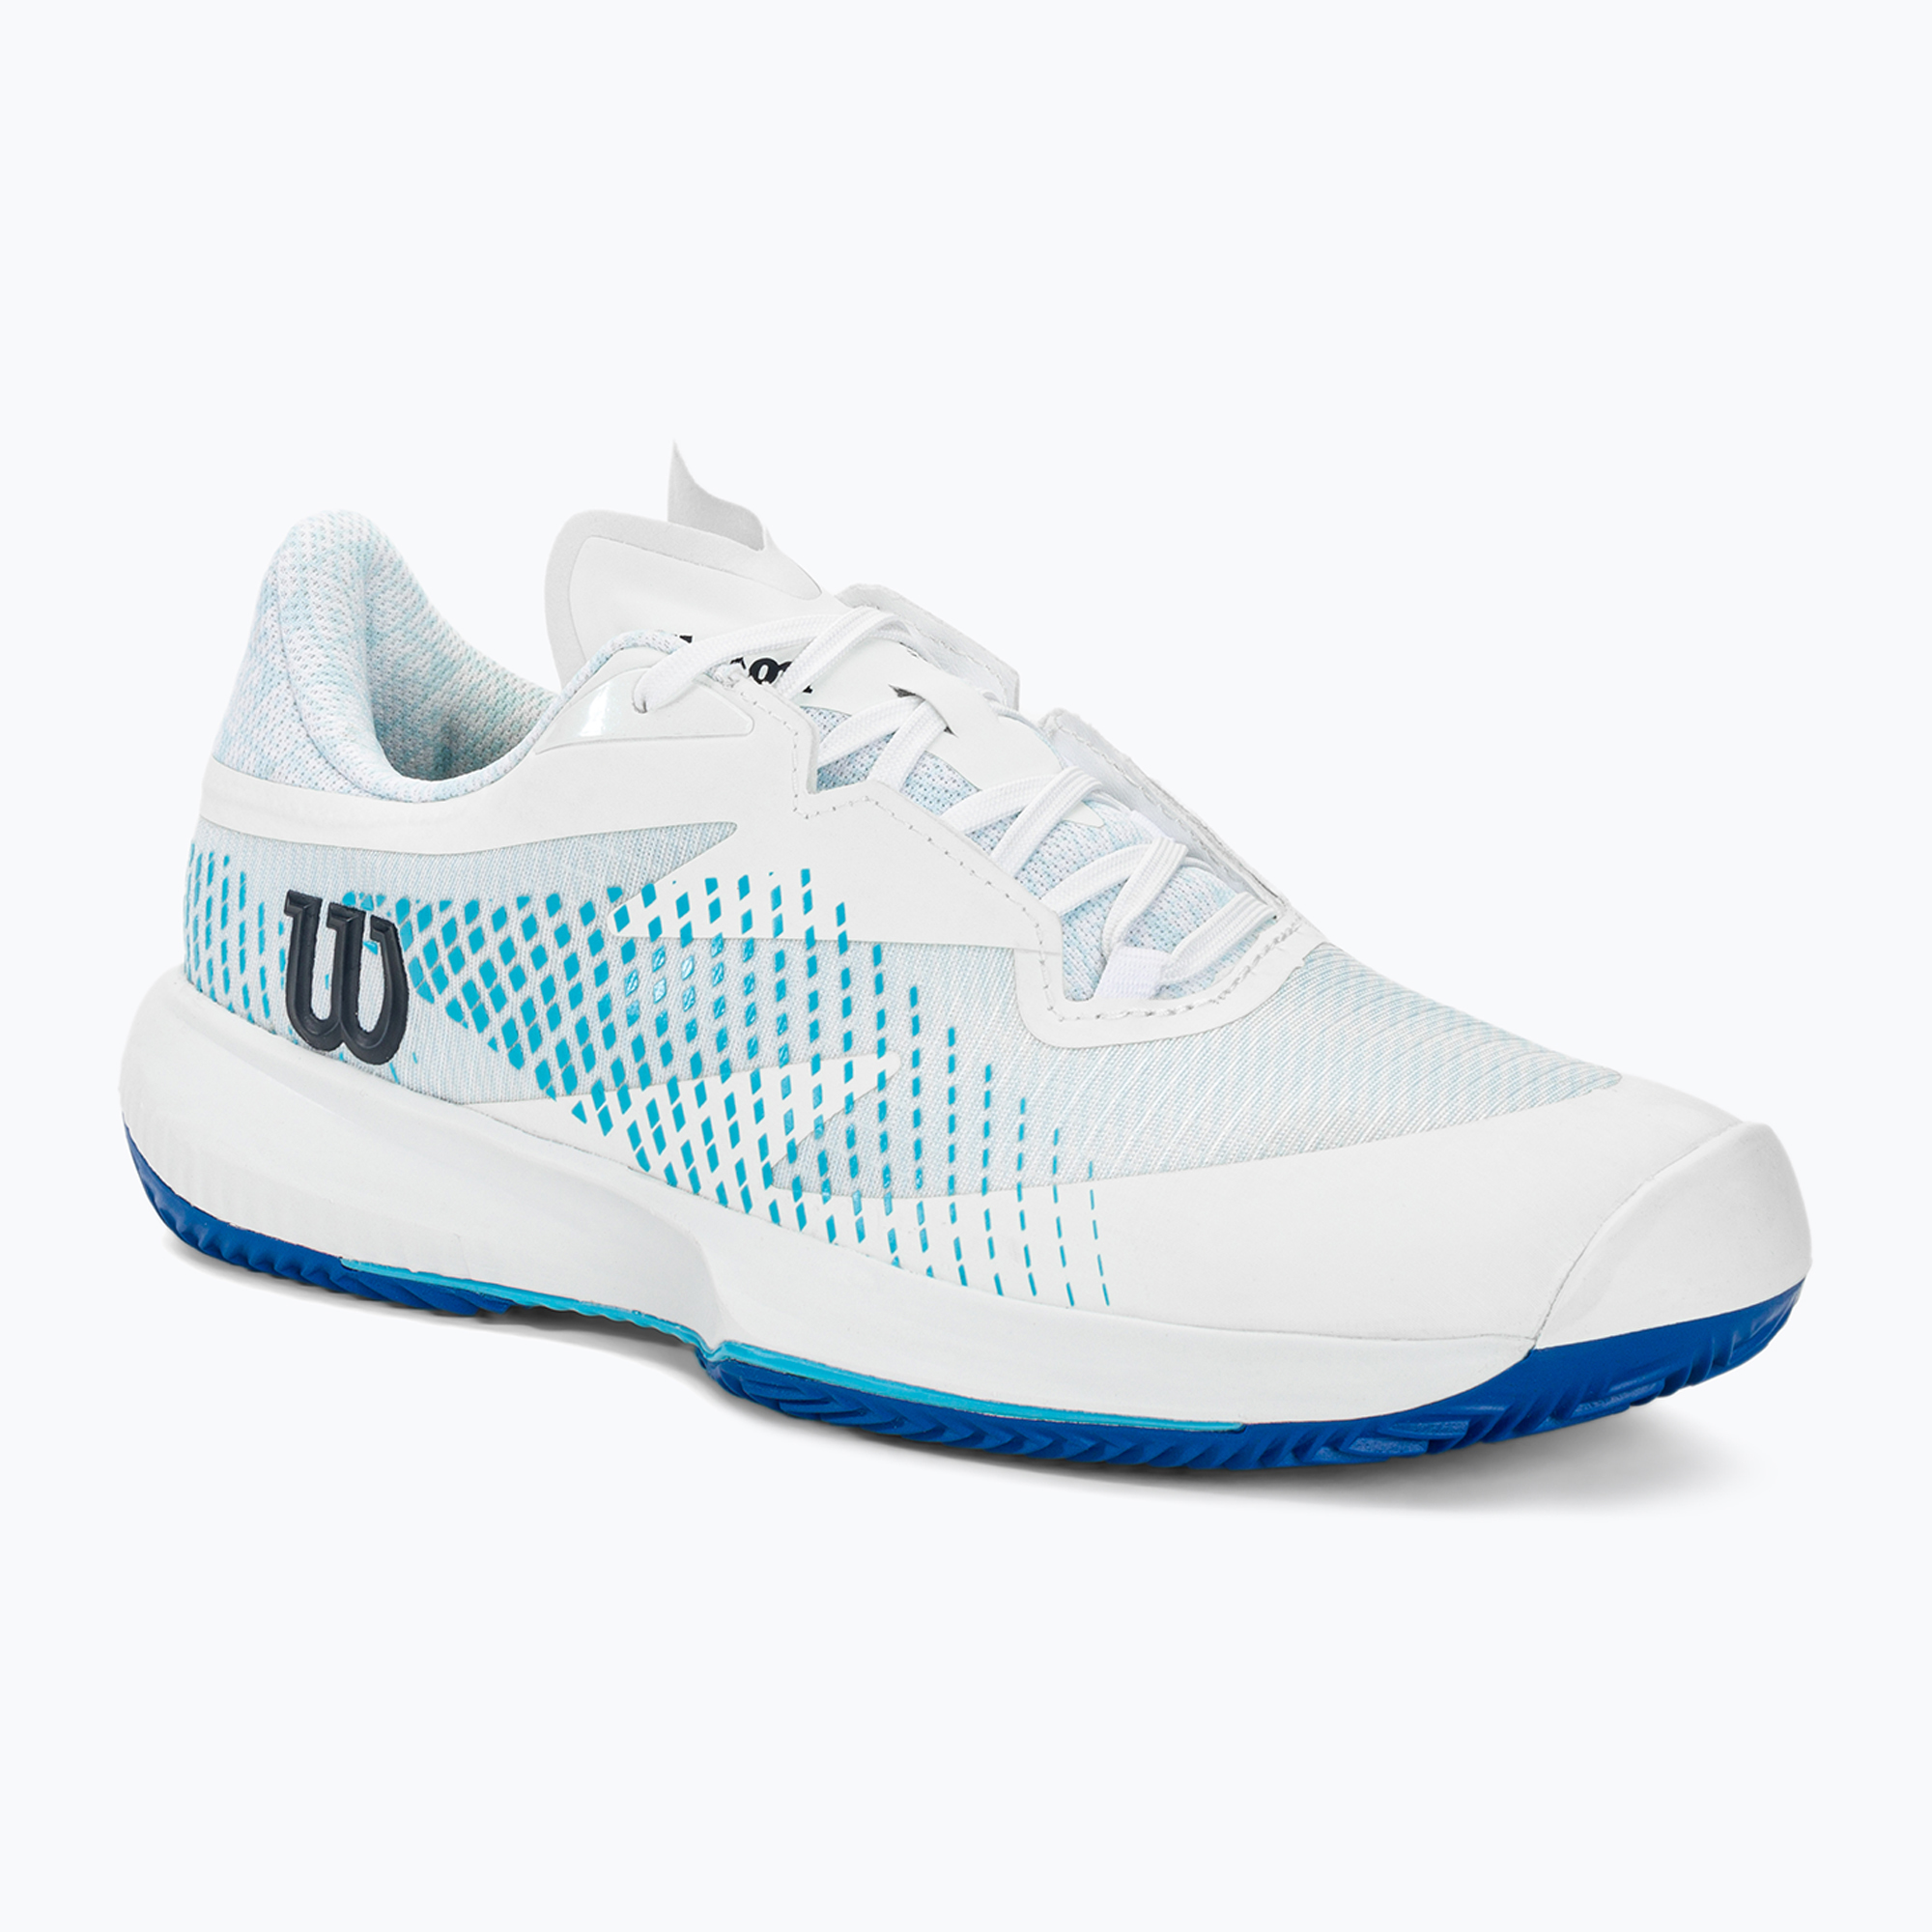 Încălțăminte de tenis pentru bărbați Wilson Kaos Swift 1.5 Clay white/blue atoll/lapis blue